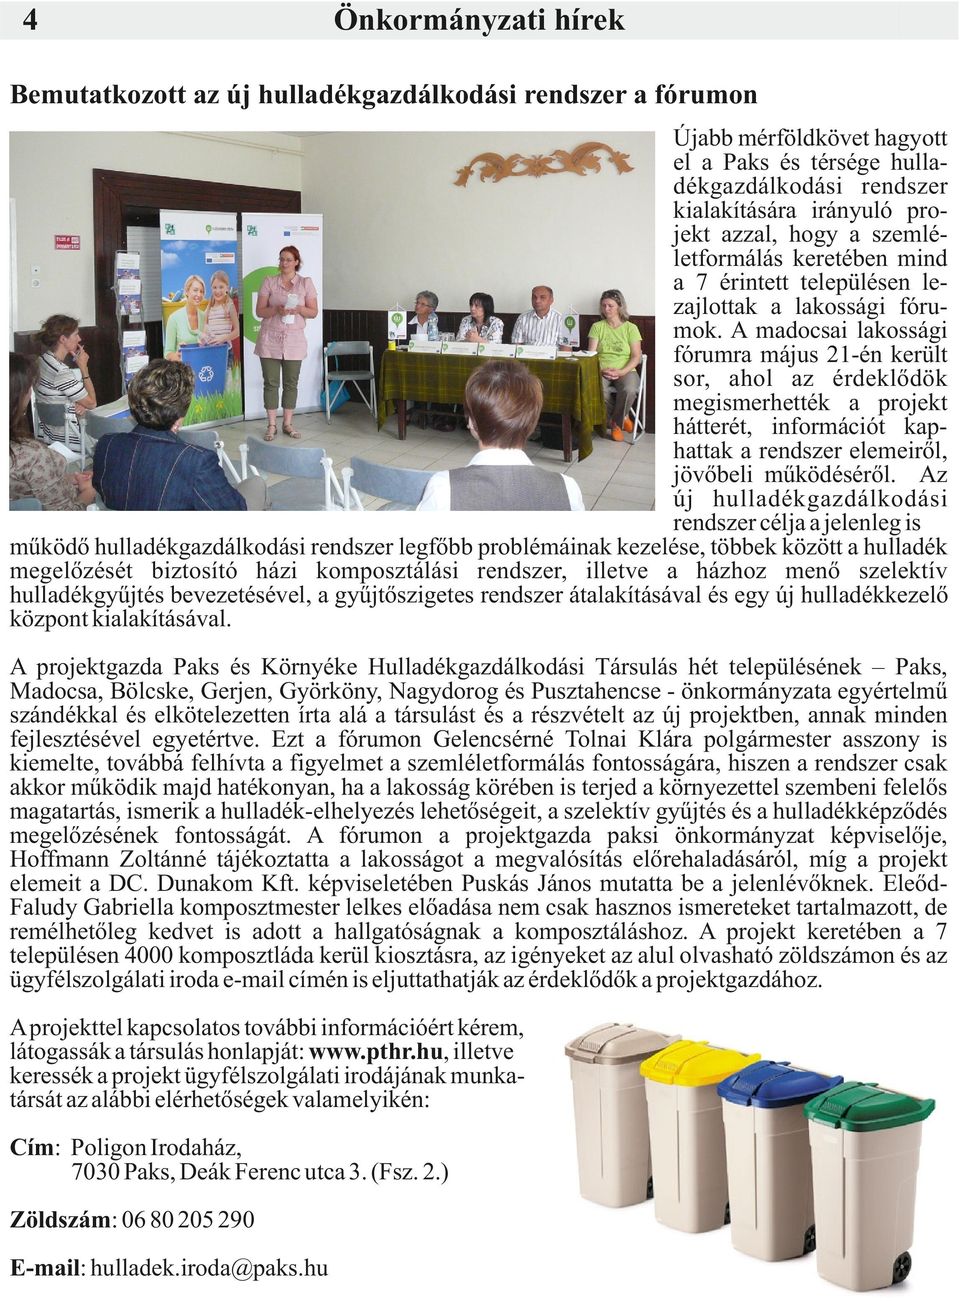 A madocsai lakossági fórumra május 21-én került sor, ahol az érdeklődök megismerhették a projekt hátterét, információt kaphattak a rendszer elemeiről, jövőbeli működéséről.